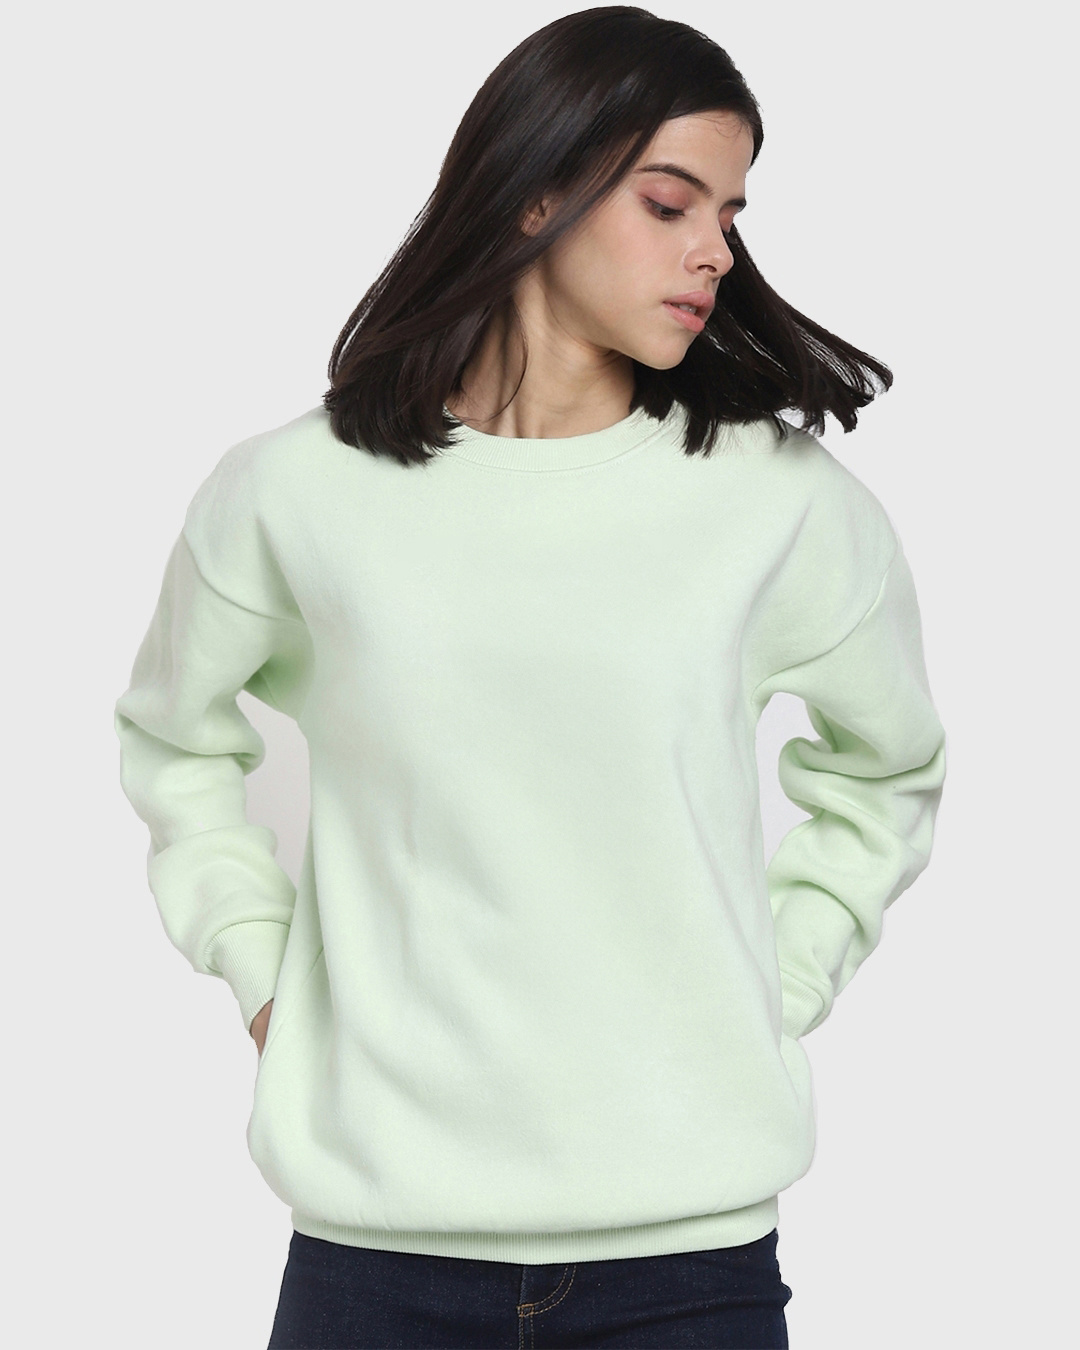 Buy Women's Green Oversized Plus Size Sweatshirt Online at Bewakoof